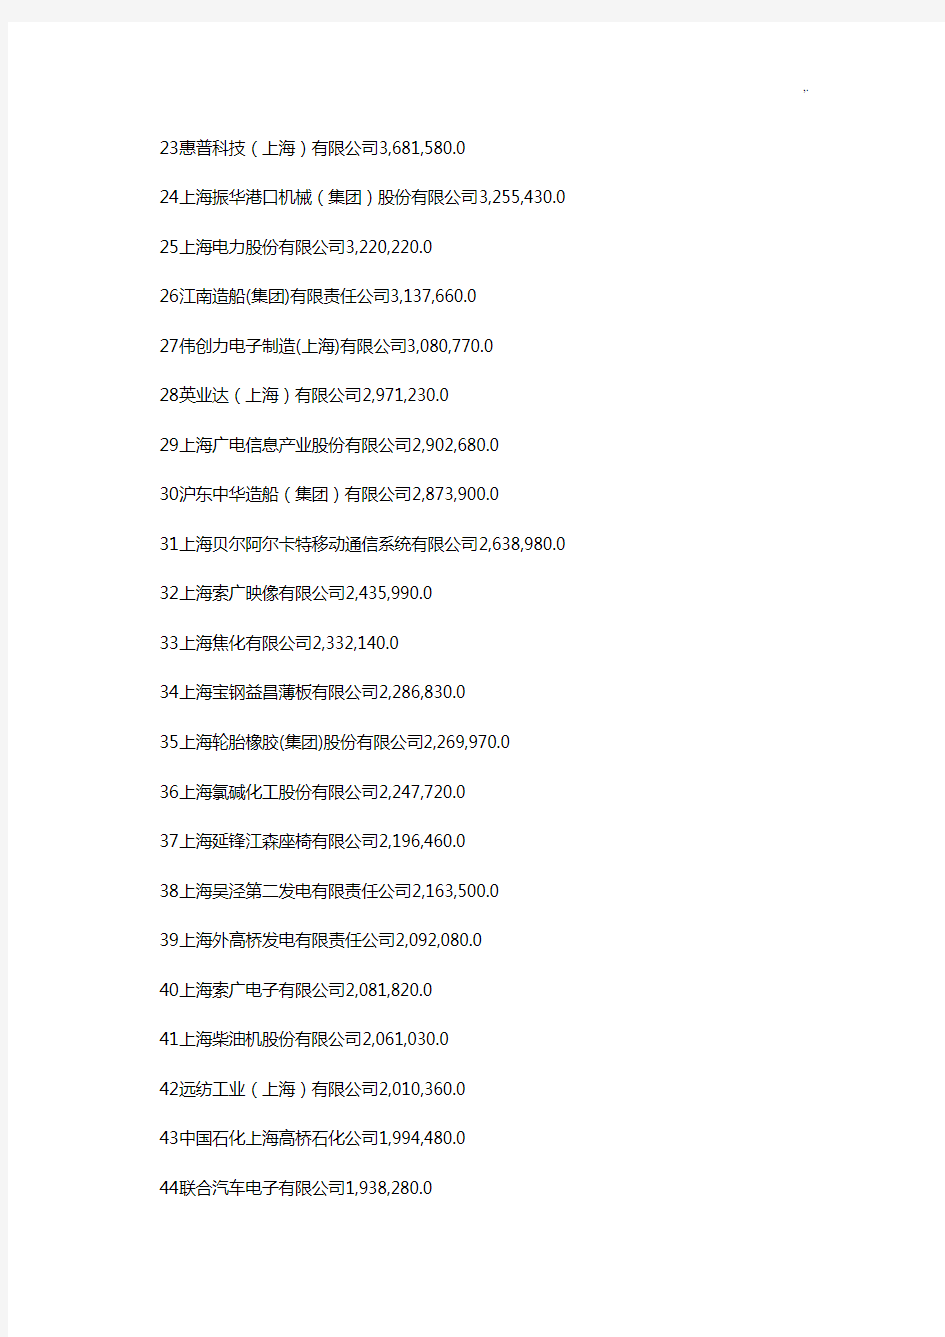 上海工业集团公司500强详细名单